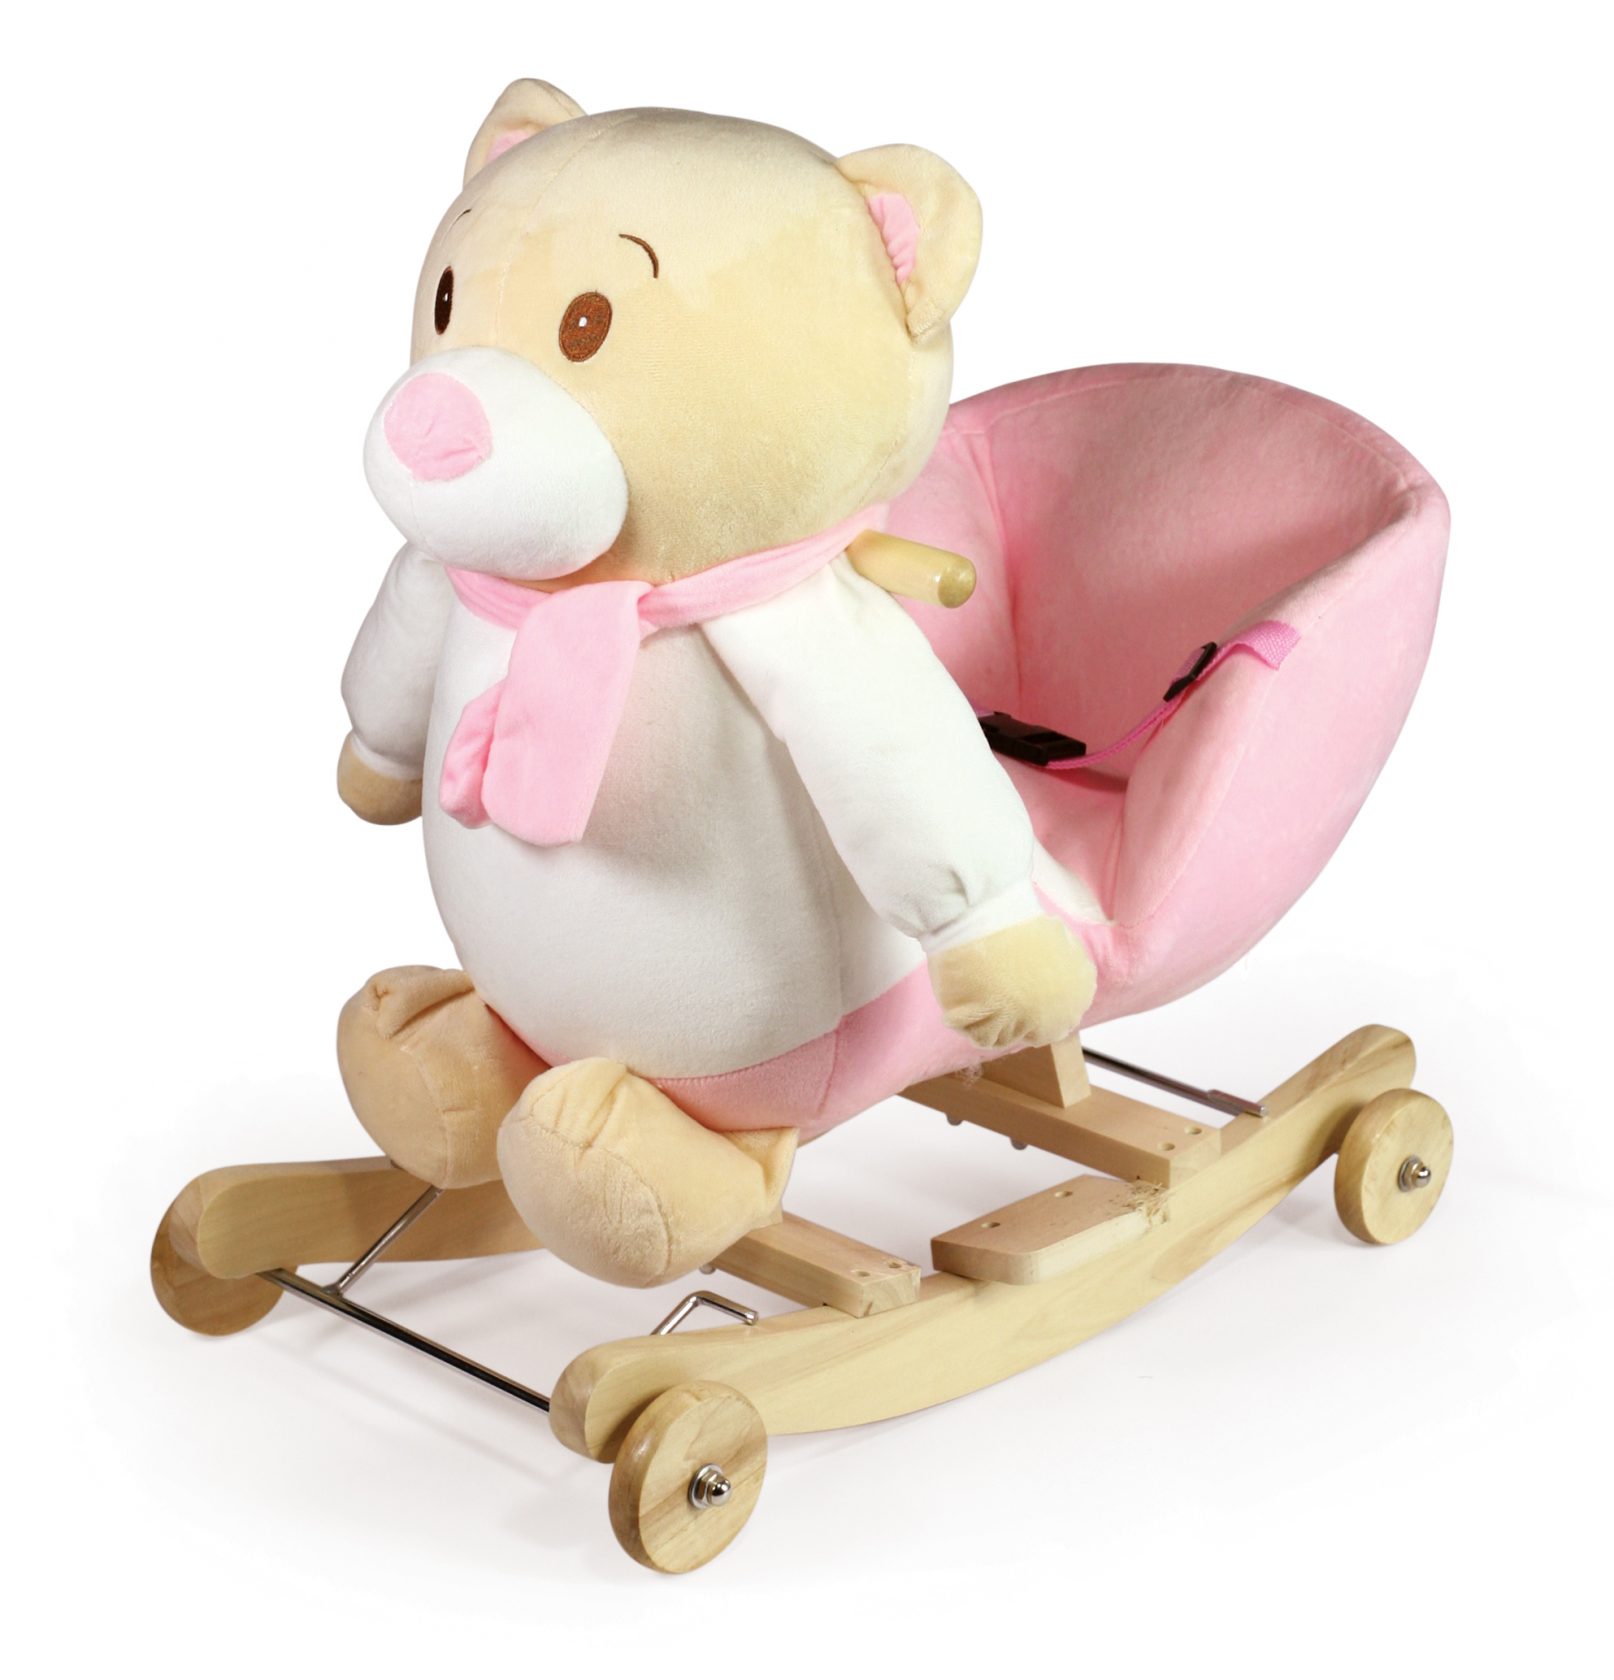 Κουνιστό αρκουδάκι ροζ Winnie με καθισματάκι με ζώνη ασφαλείας και ήχο. Οι ρόδες του βγαίνουν και γίνεται κουνιστό